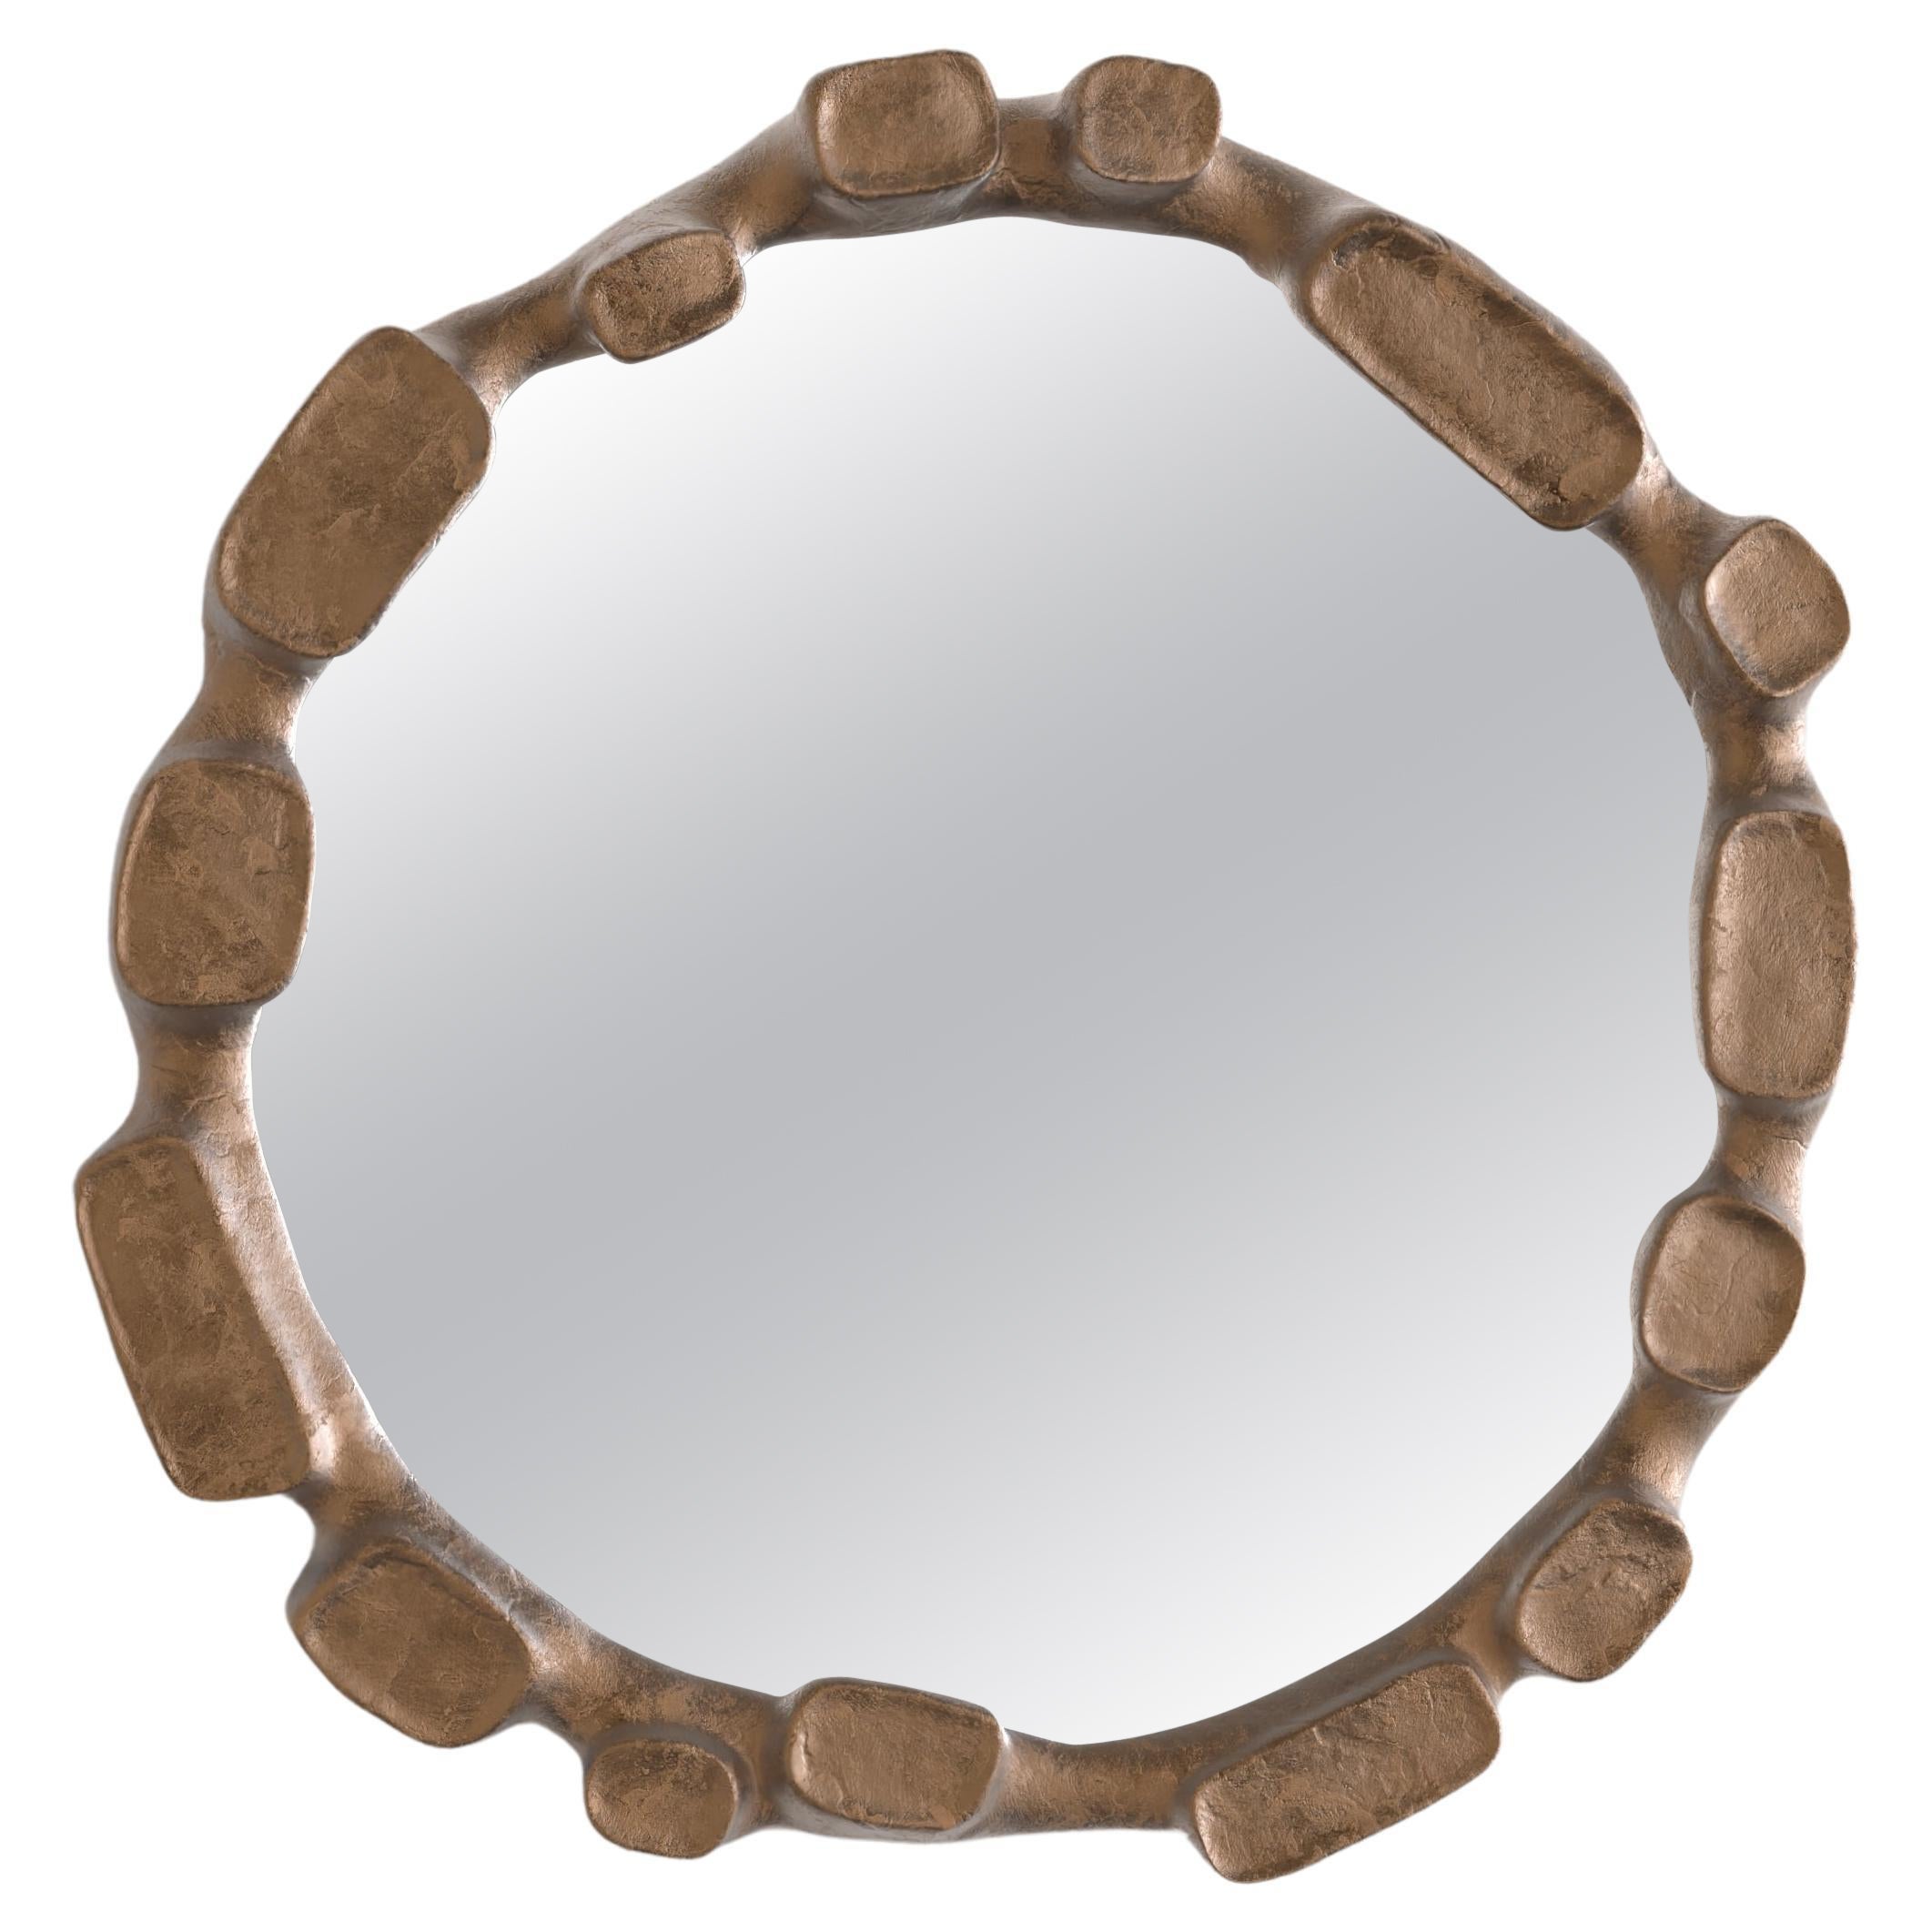 Mare V1 Wall Mirror by Edizione Limitata For Sale